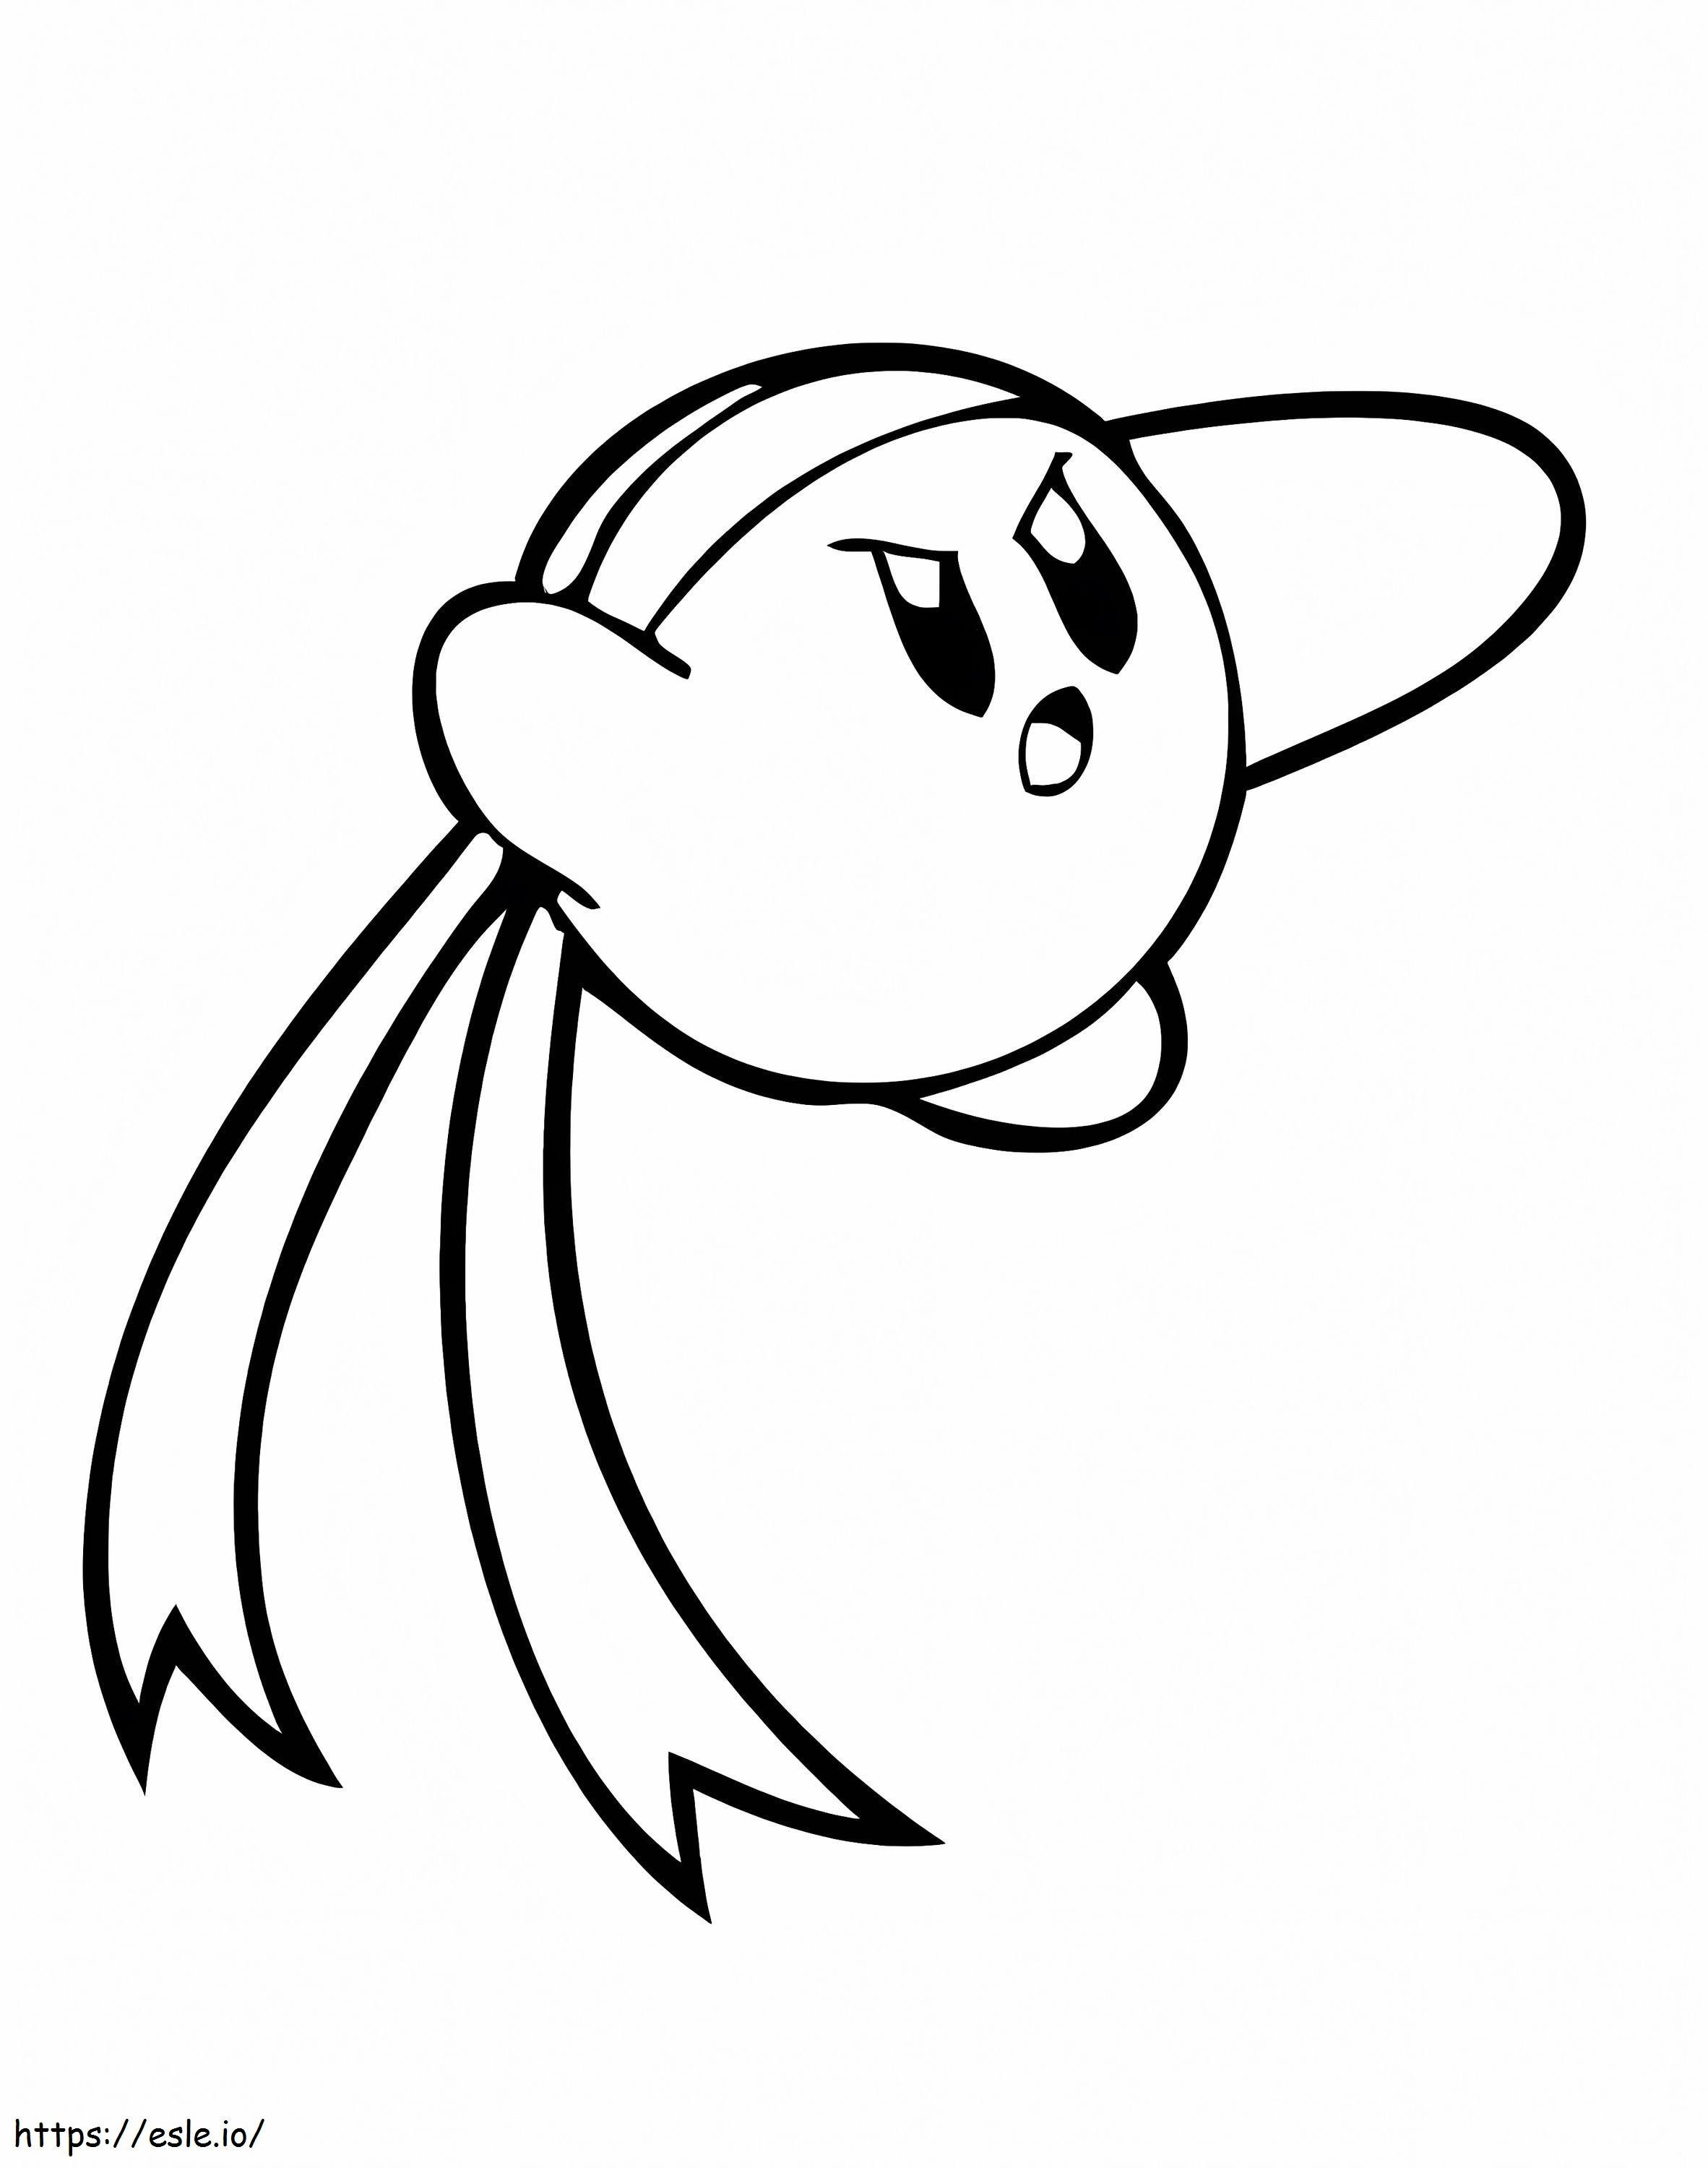 Kirby-Kämpfer ausmalbilder